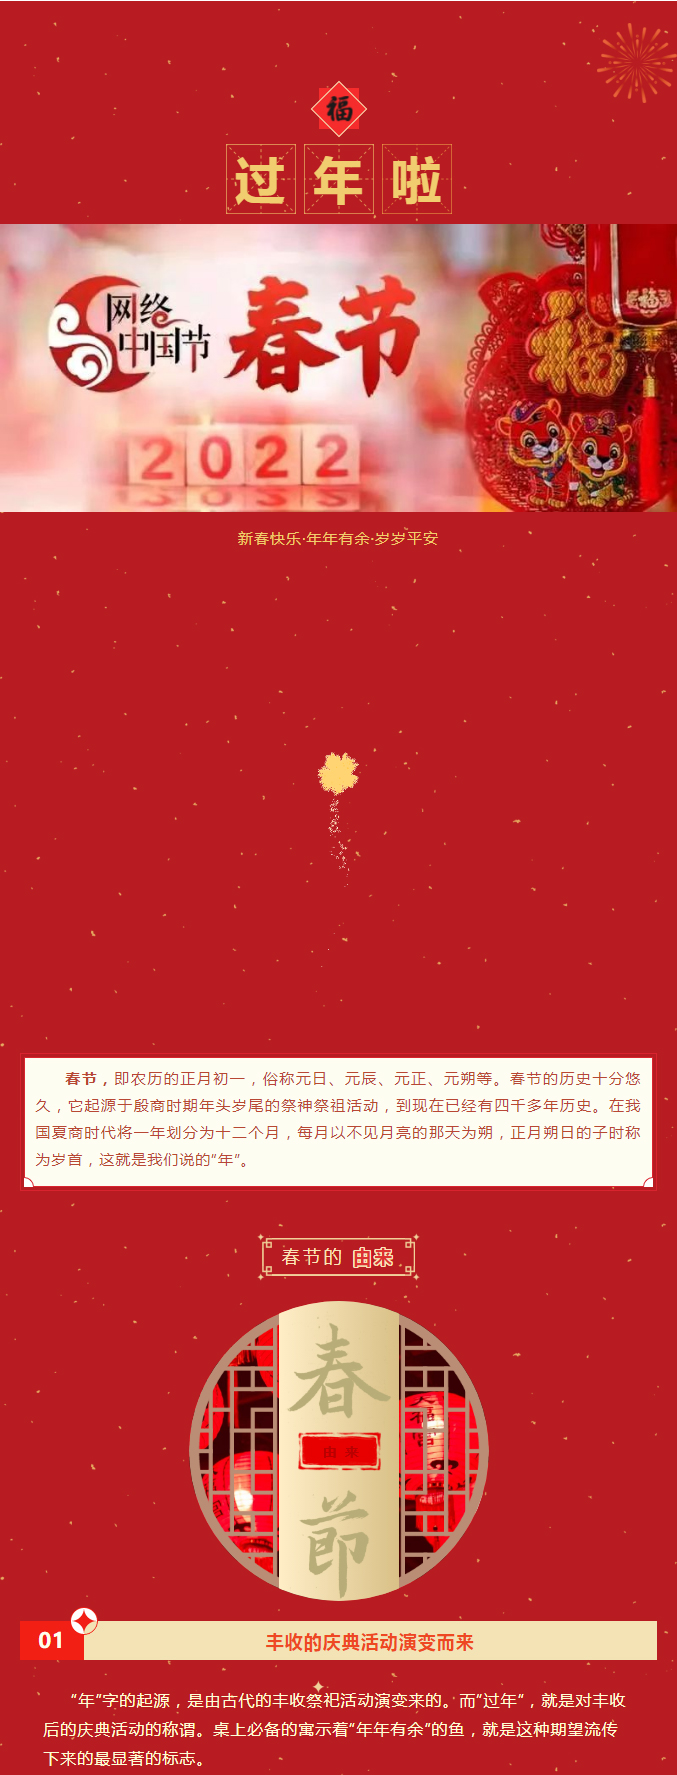 【网络中国节·春节】新年快乐-_-2022，我们一起翻越山海，逐光而行！_01